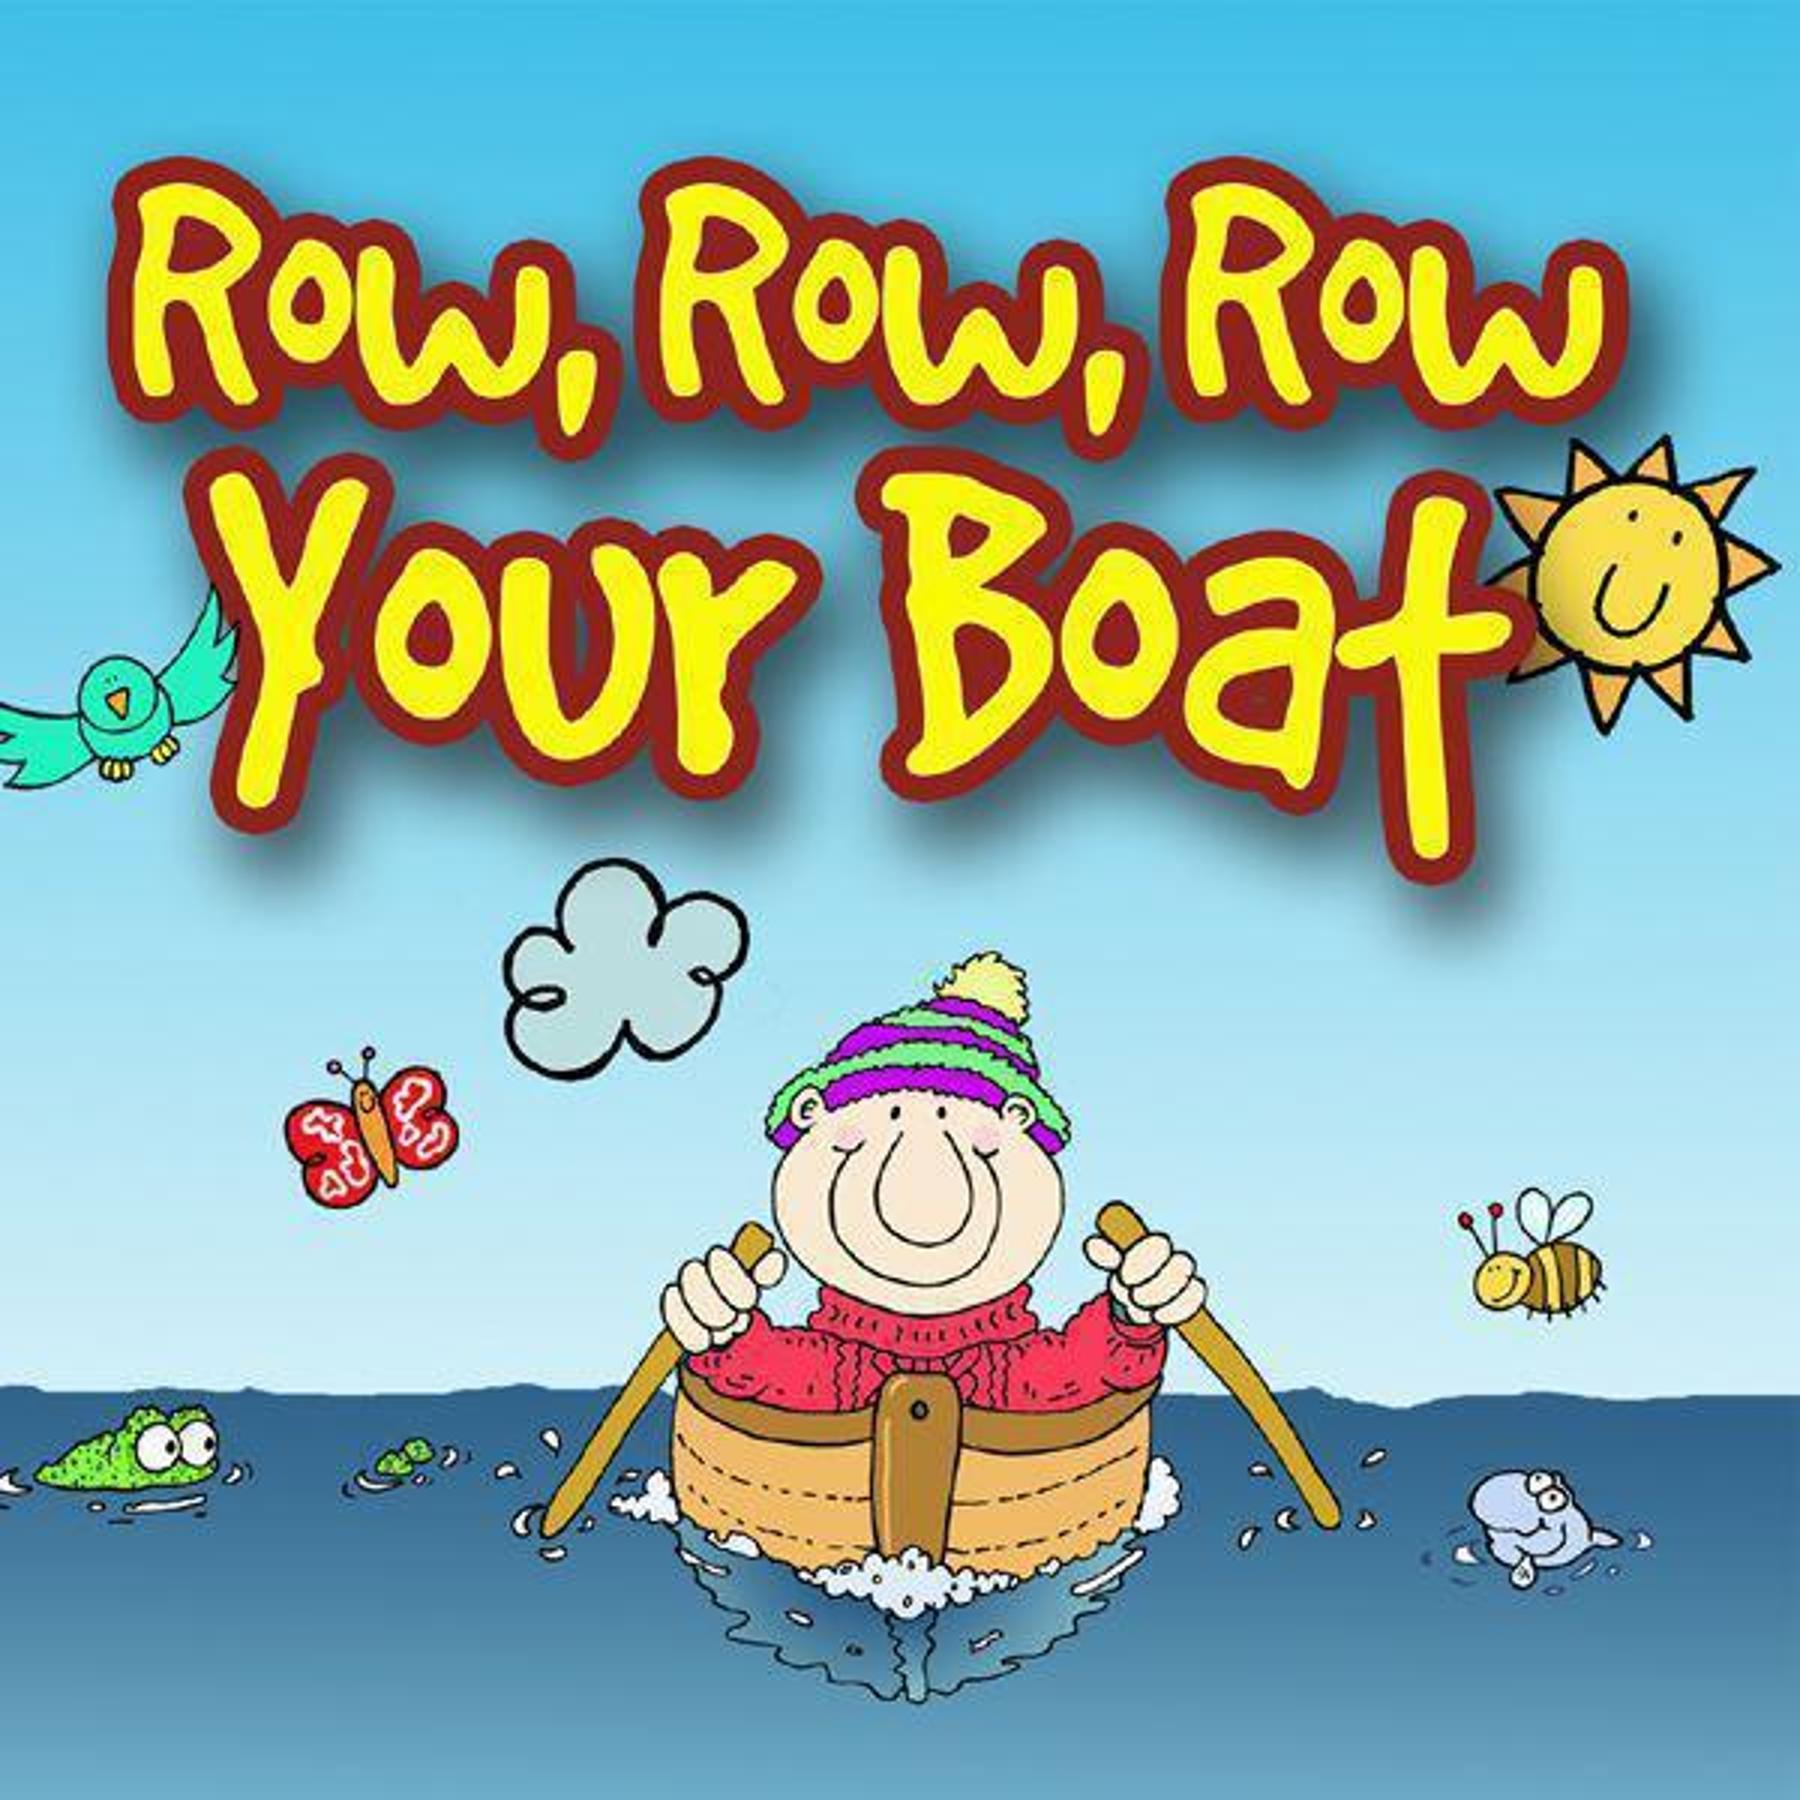 row, row, row your boat